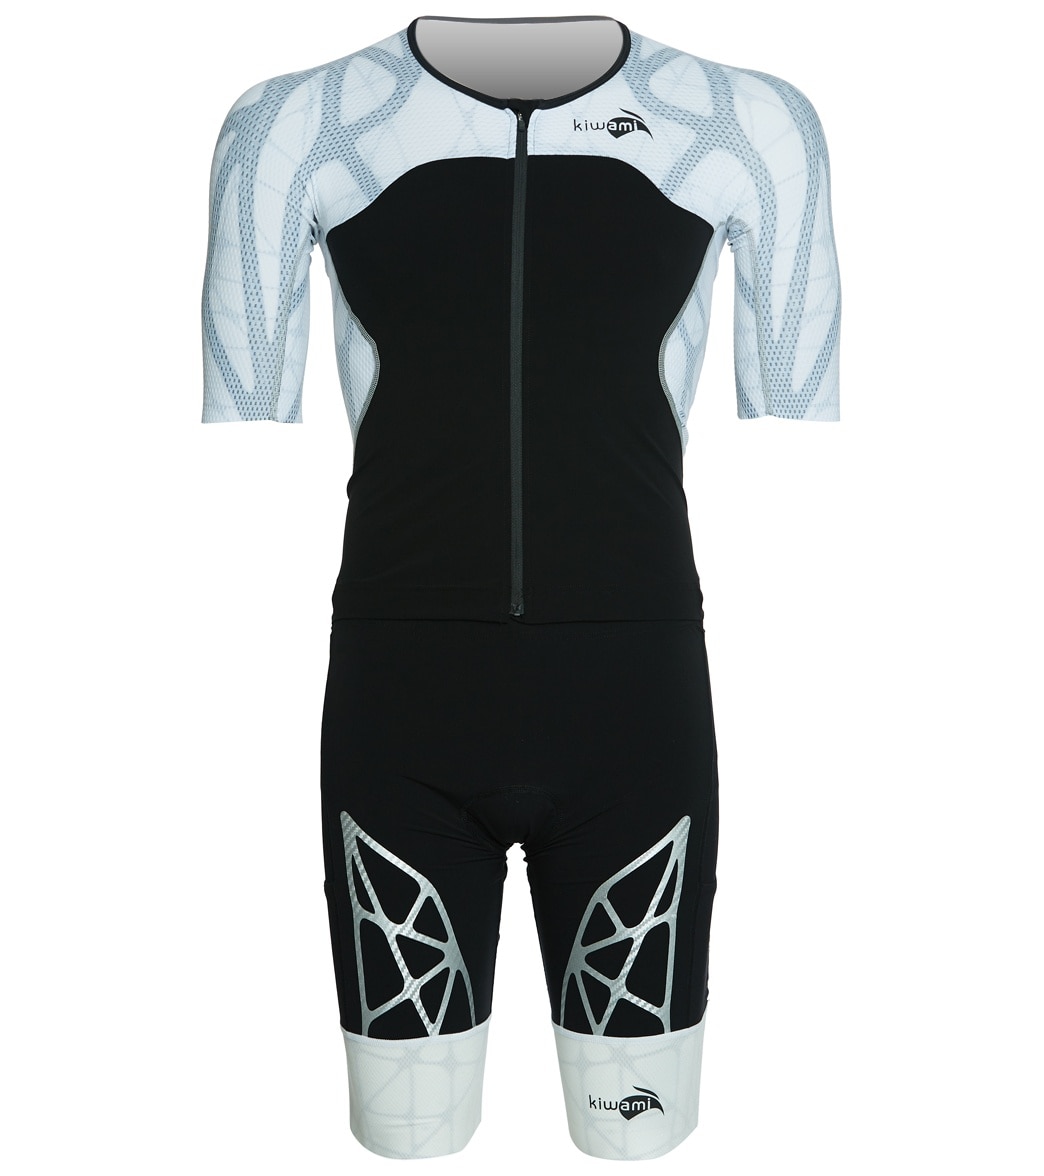 Kiwami Men's Spider Ld2 Aero Trisuit - Black/White Xl Elastane/Polyamide - Swimoutlet.com